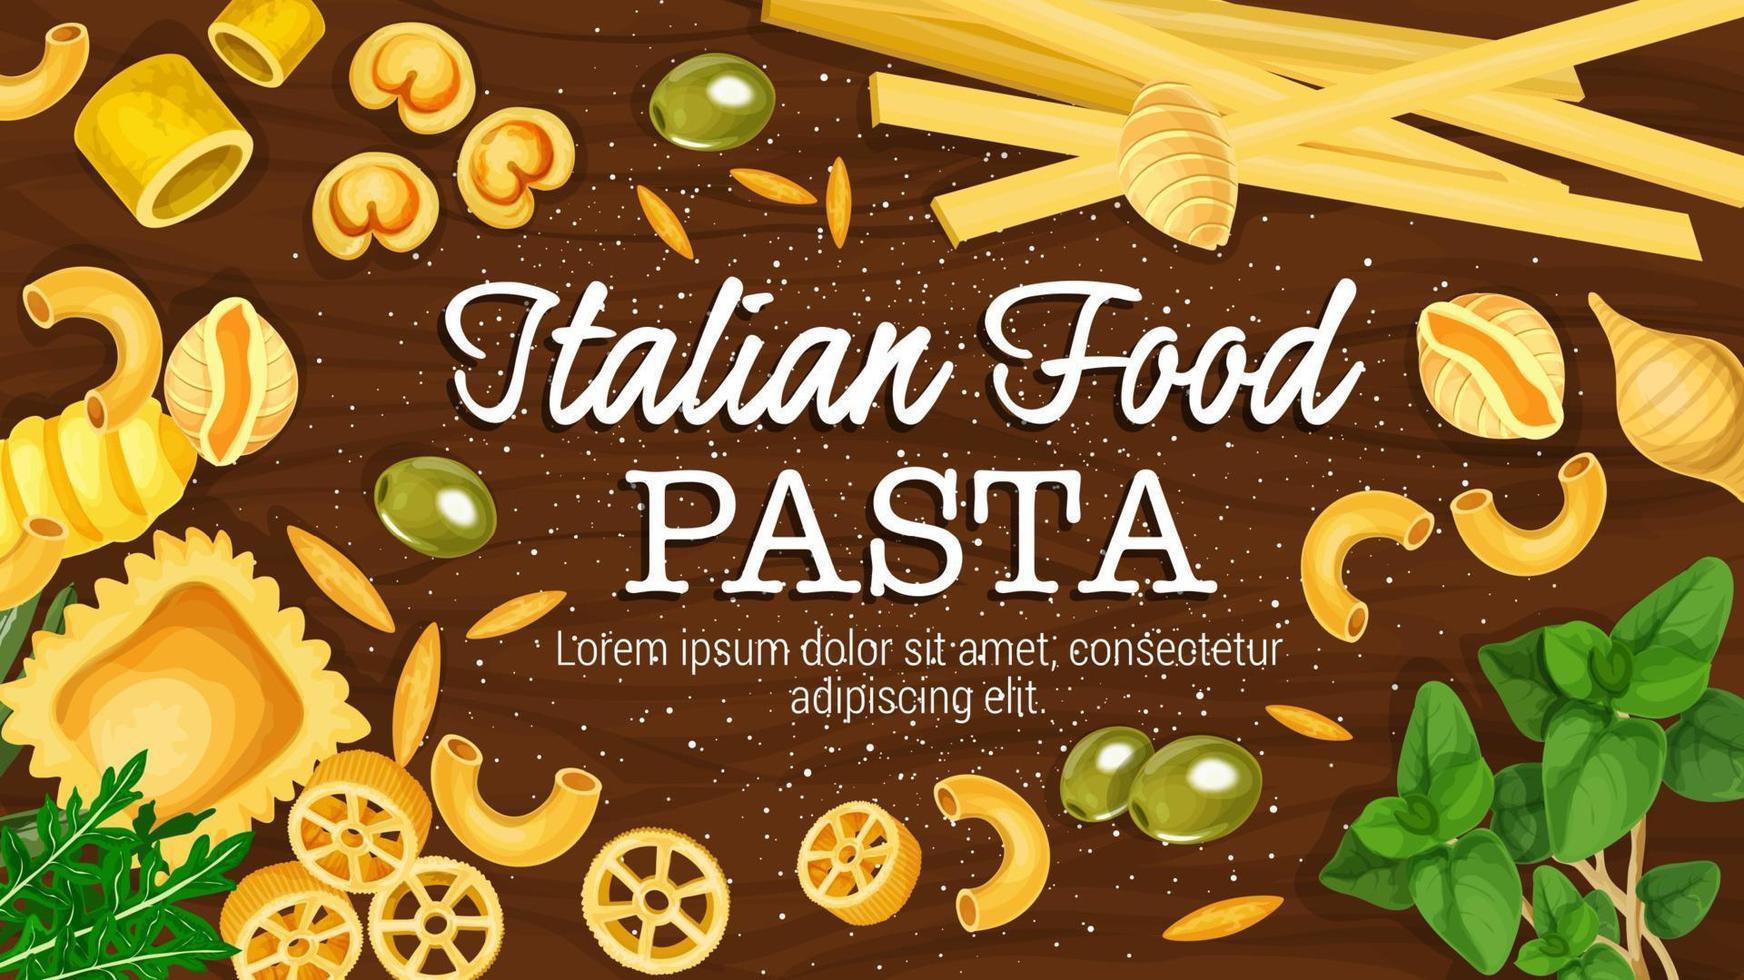 italiensk pasta på styrelse vektor affisch